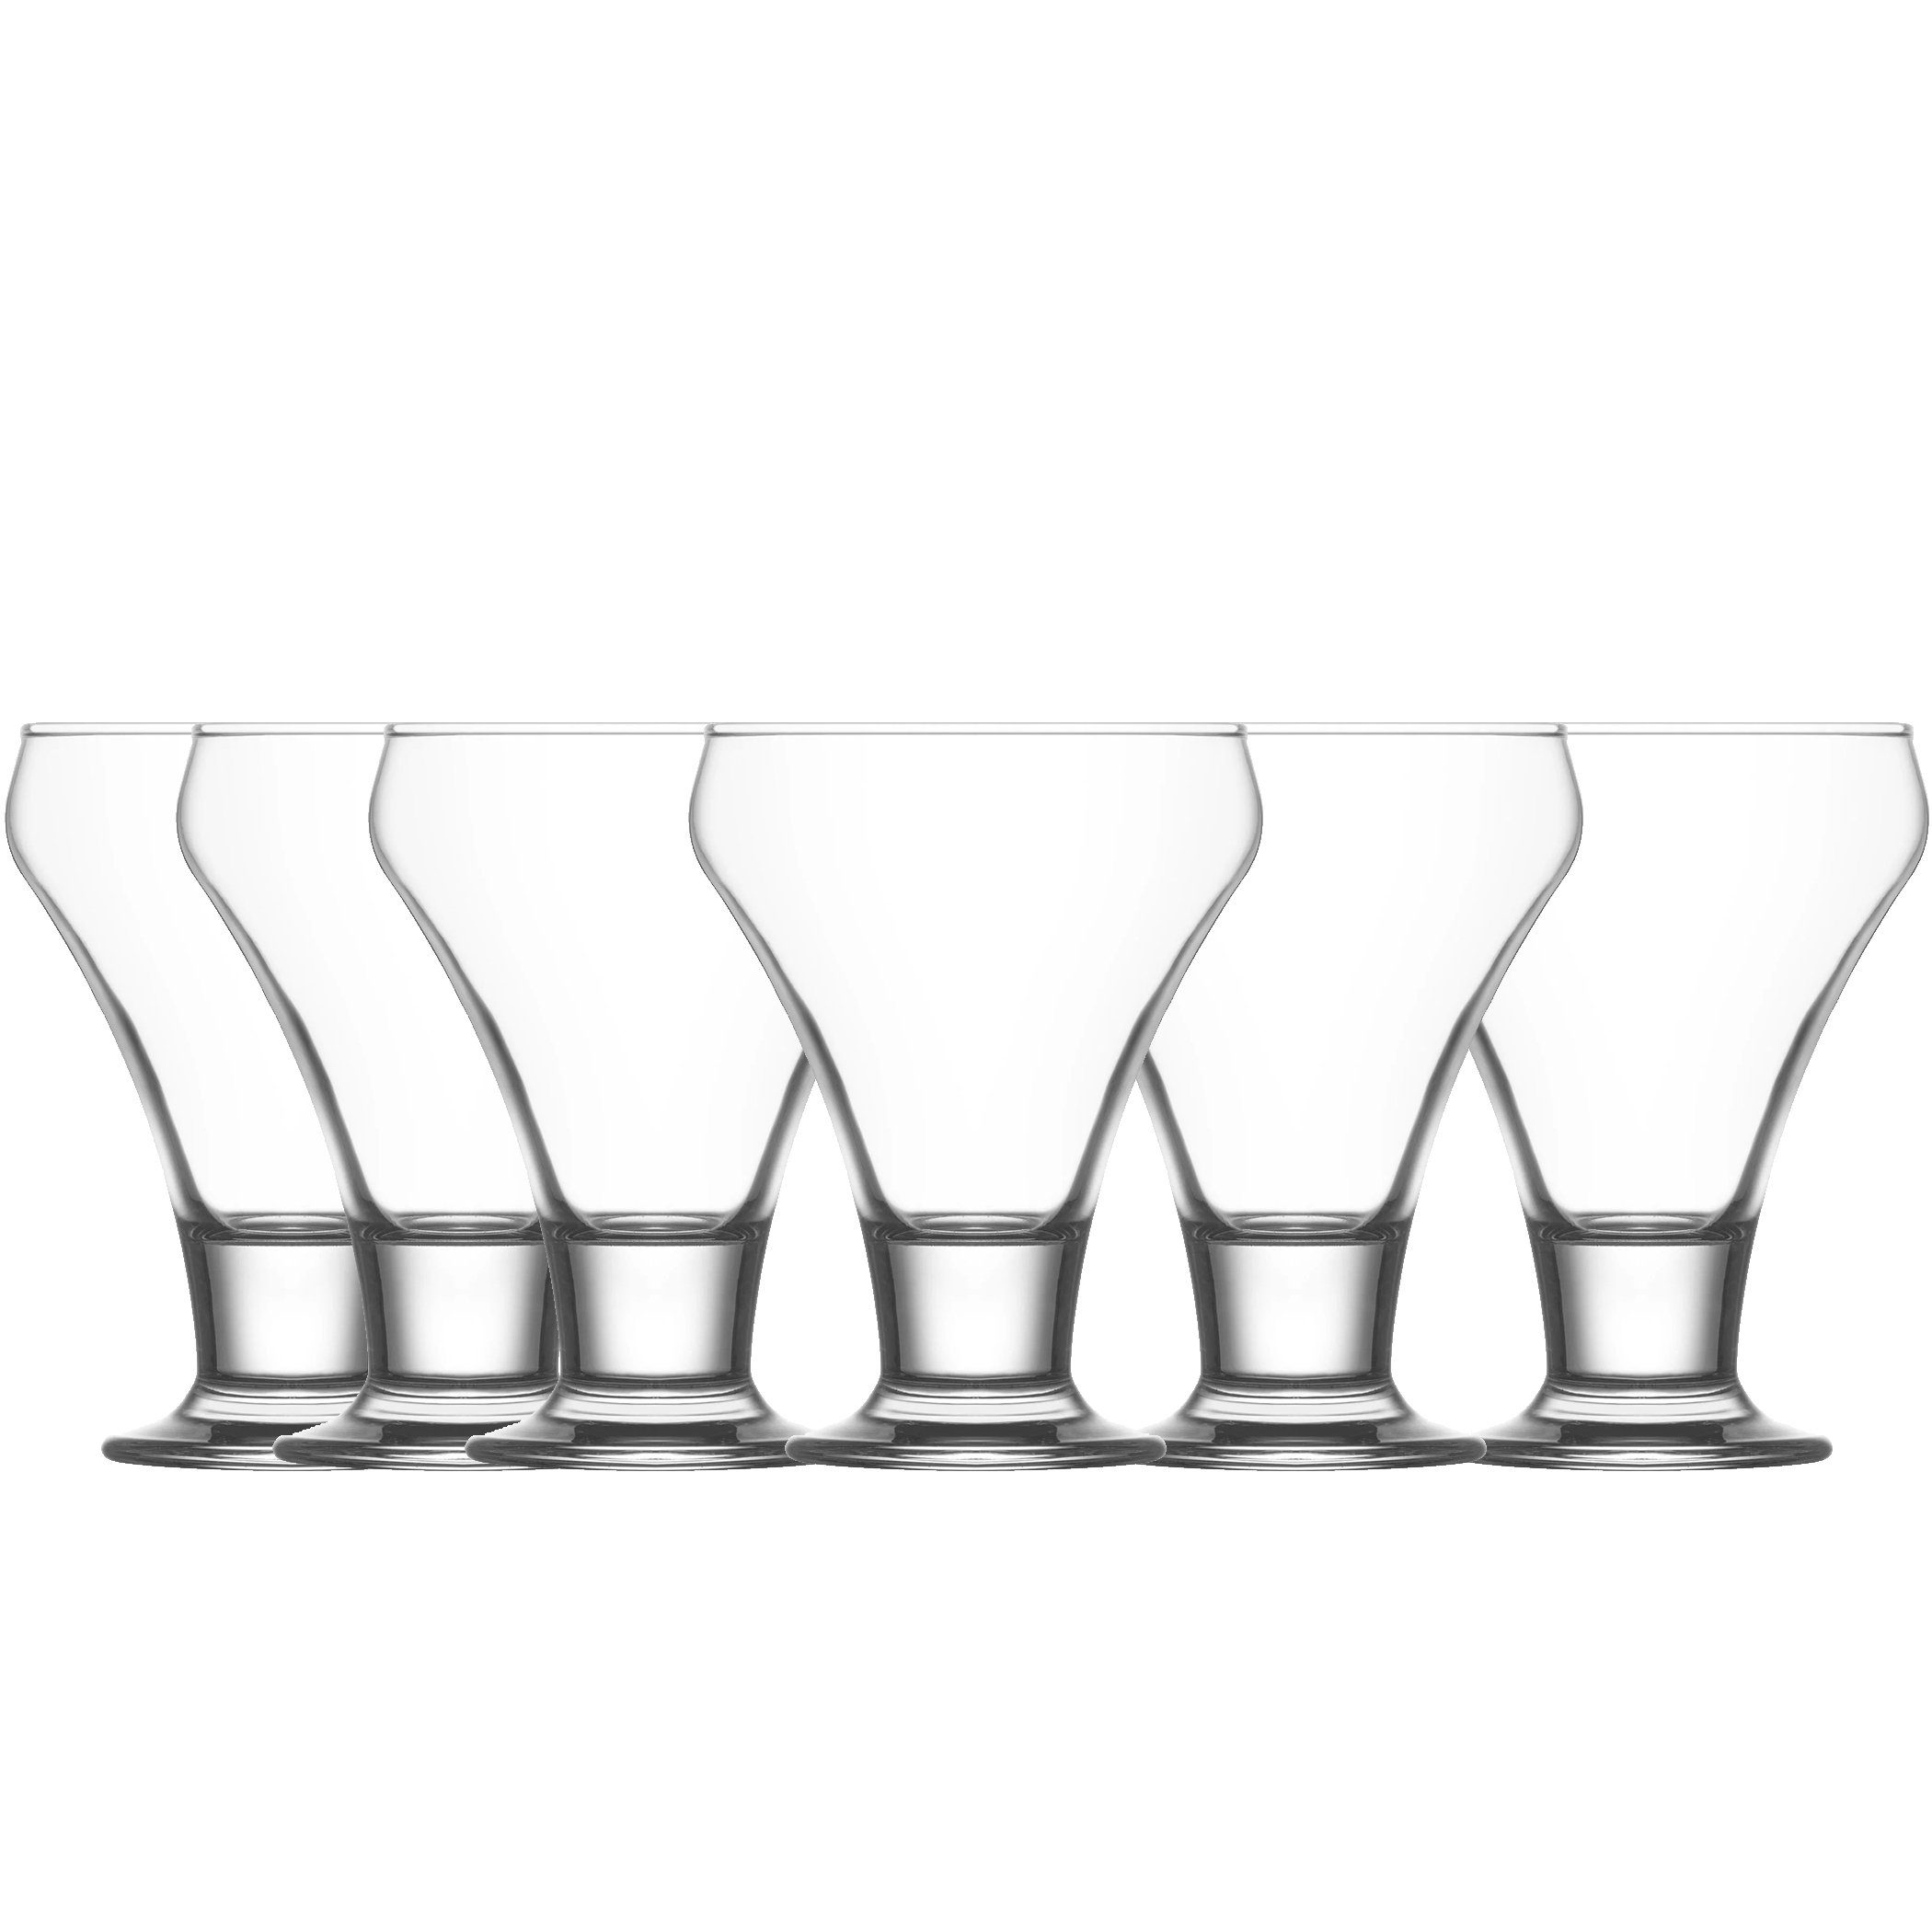 LAV Glas Eisbecher 305ml 6tlg Dessert-Glas FRO378, Glas, Spülmaschinenfest